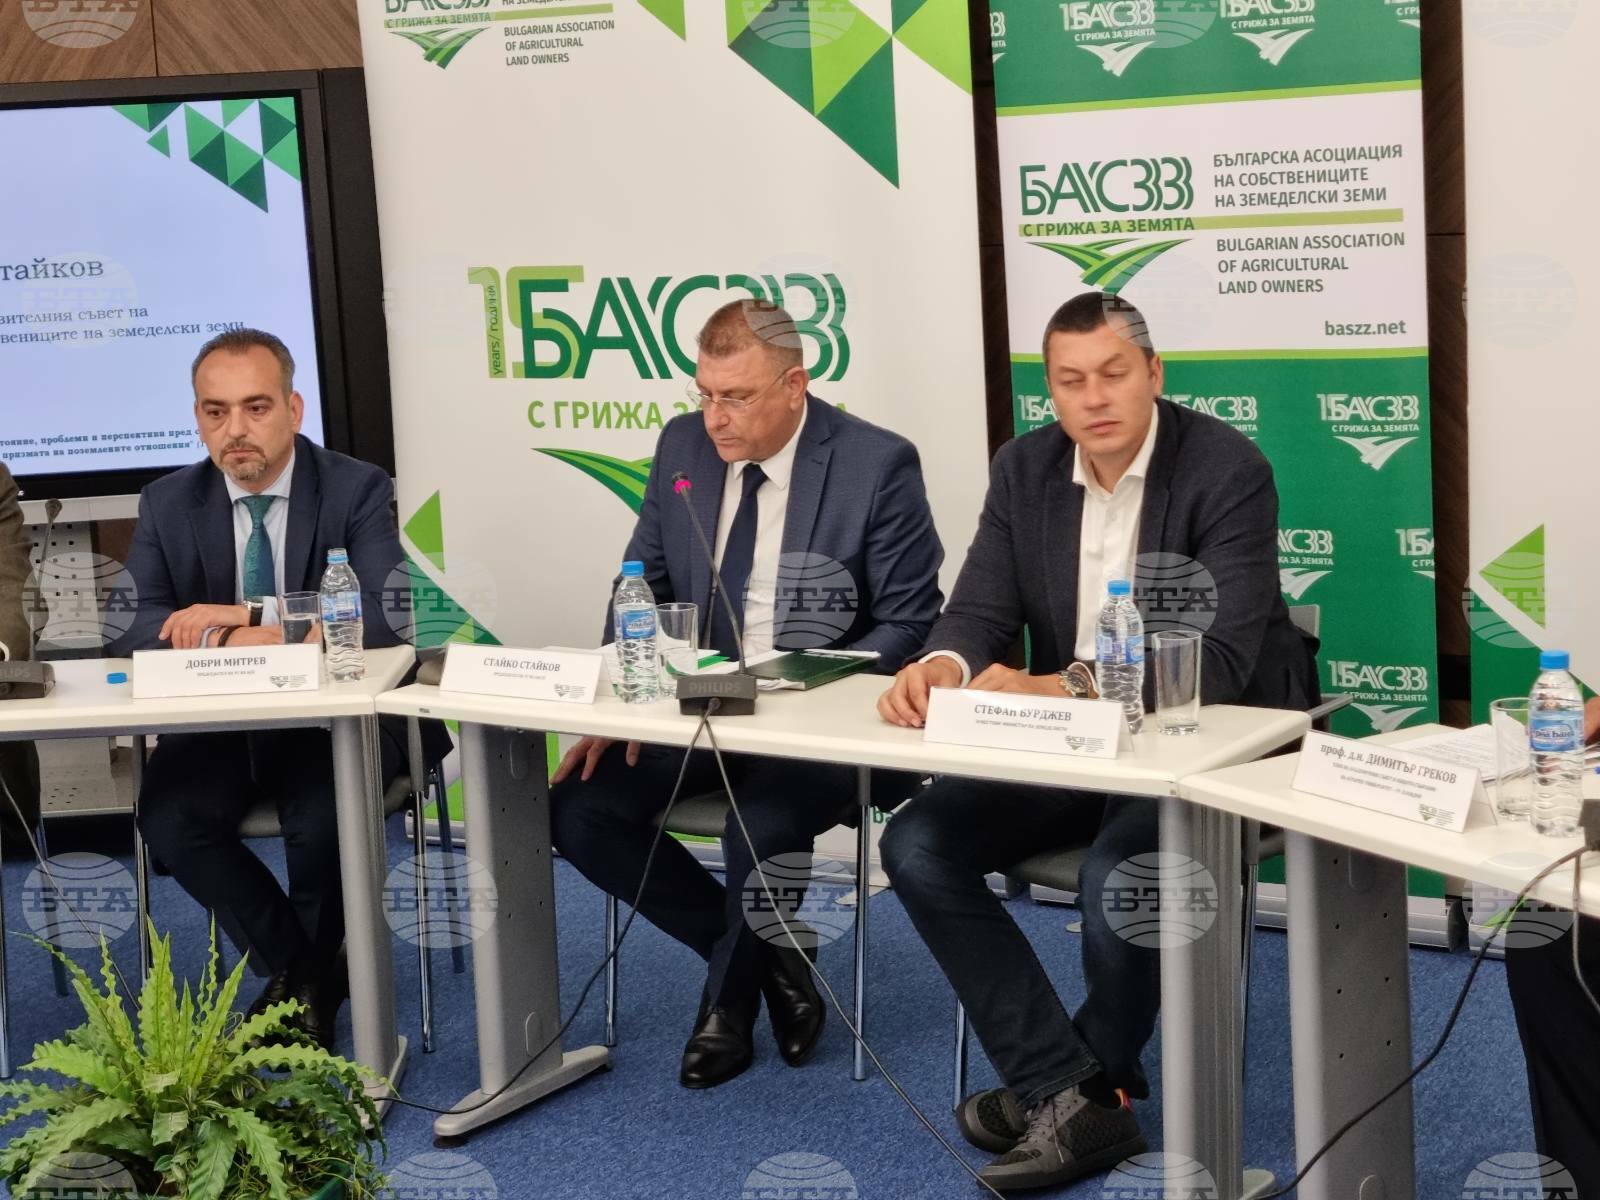 Все още има редица нерешени проблеми в сектора на земеделието, каза председателят на Управителния съвет на БАСЗЗ Стайко Стайков 